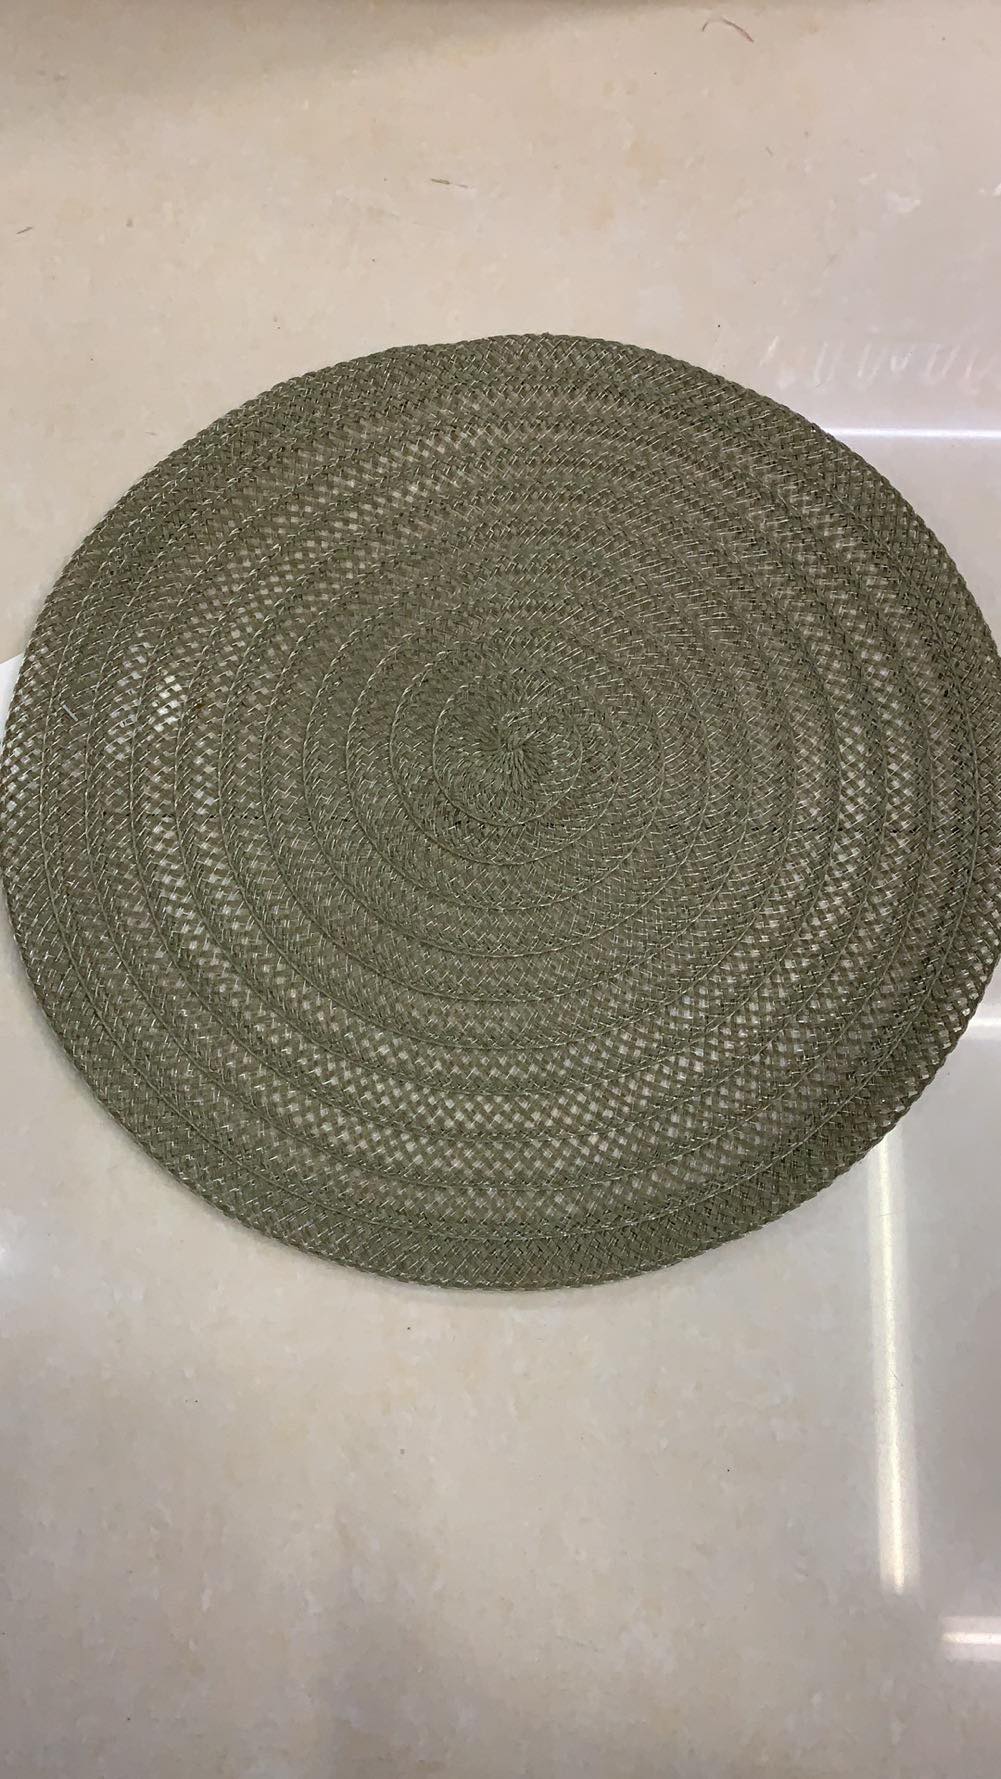 棉纱锅垫隔热垫热螺纹圆形餐垫桌面防滑碗盘垫KDC399-15产品图